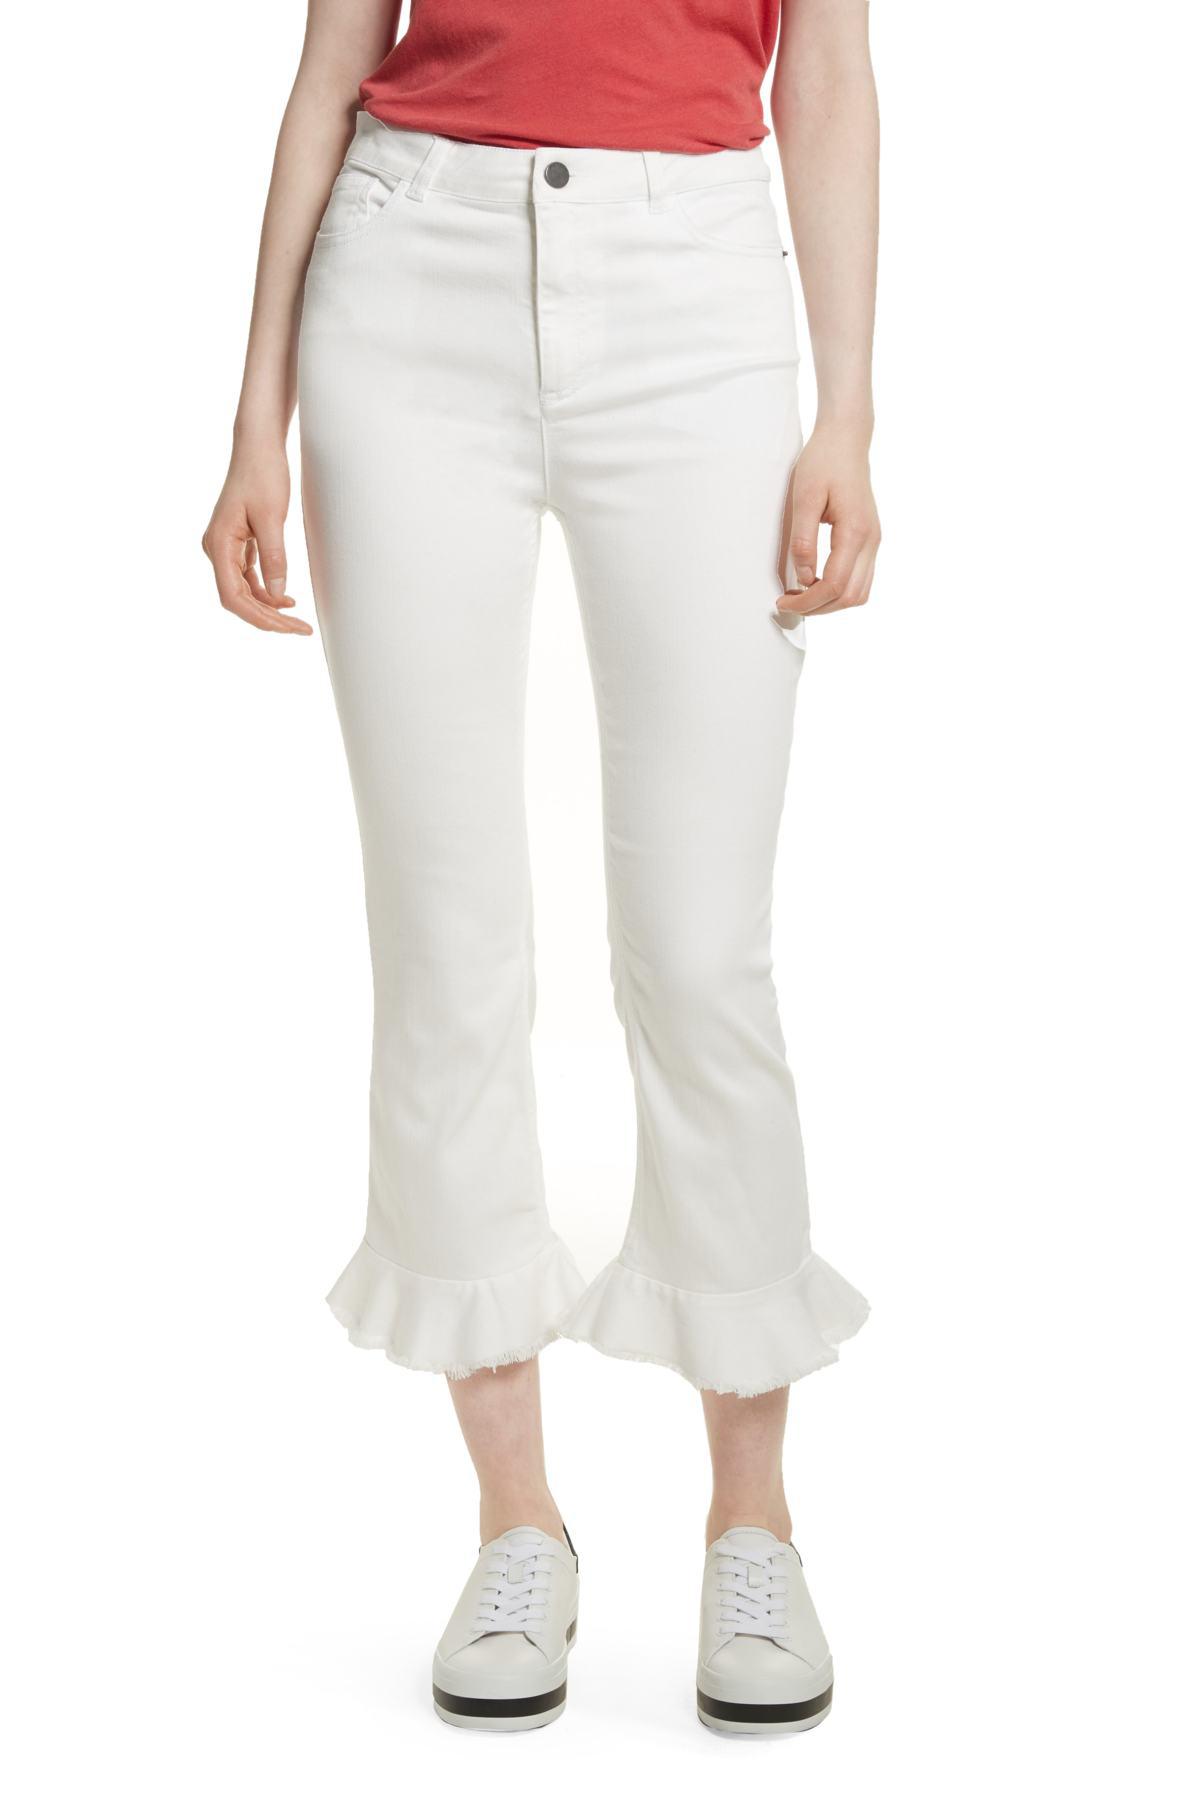 AO.LA by alice + olivia Denim Zoe Ruffle Hem Crop Jeans in White 